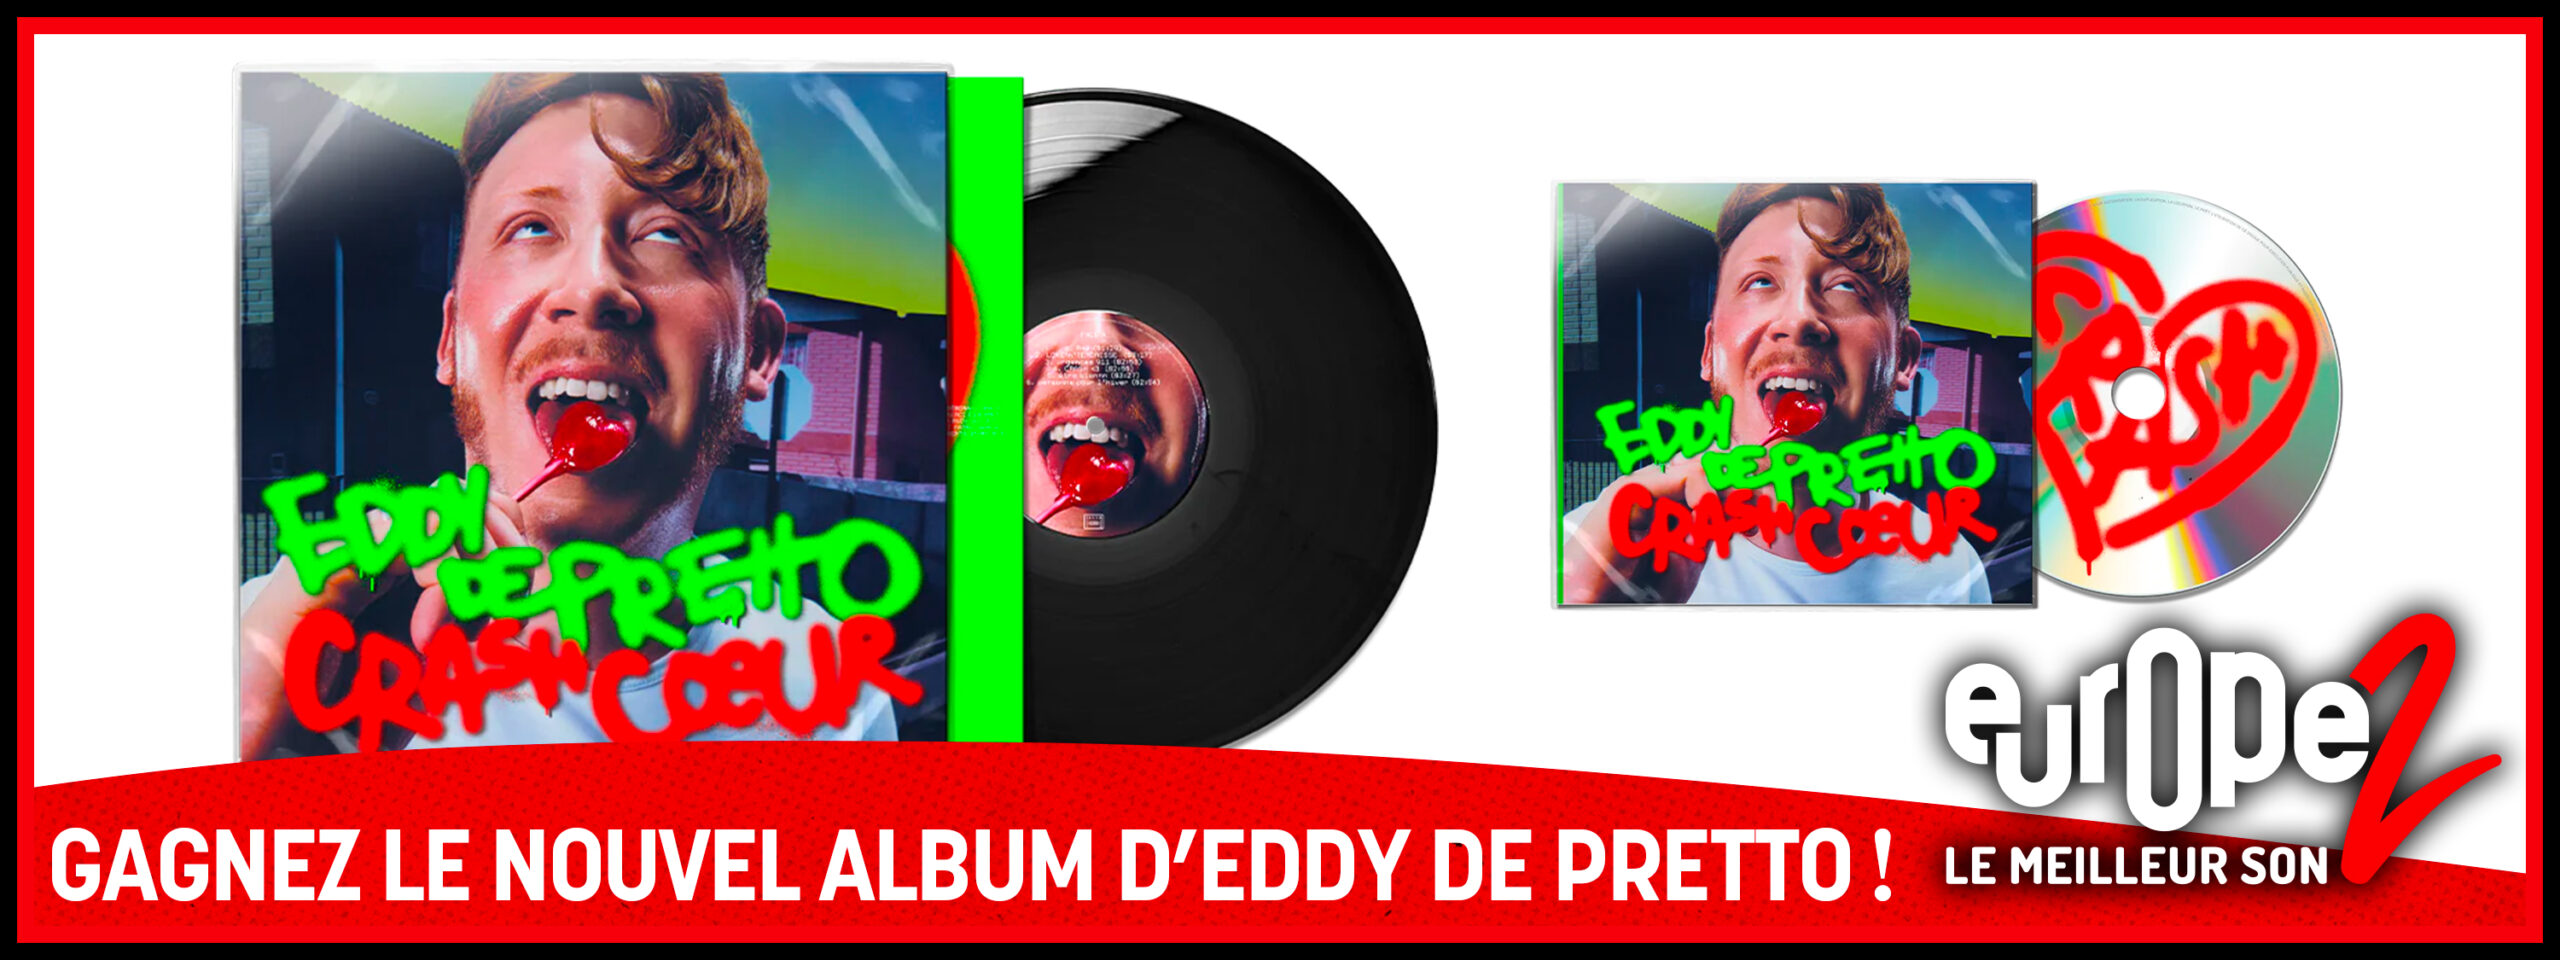 Gagnez vos coffrets CD + Vinyle d'Eddy de Pretto !